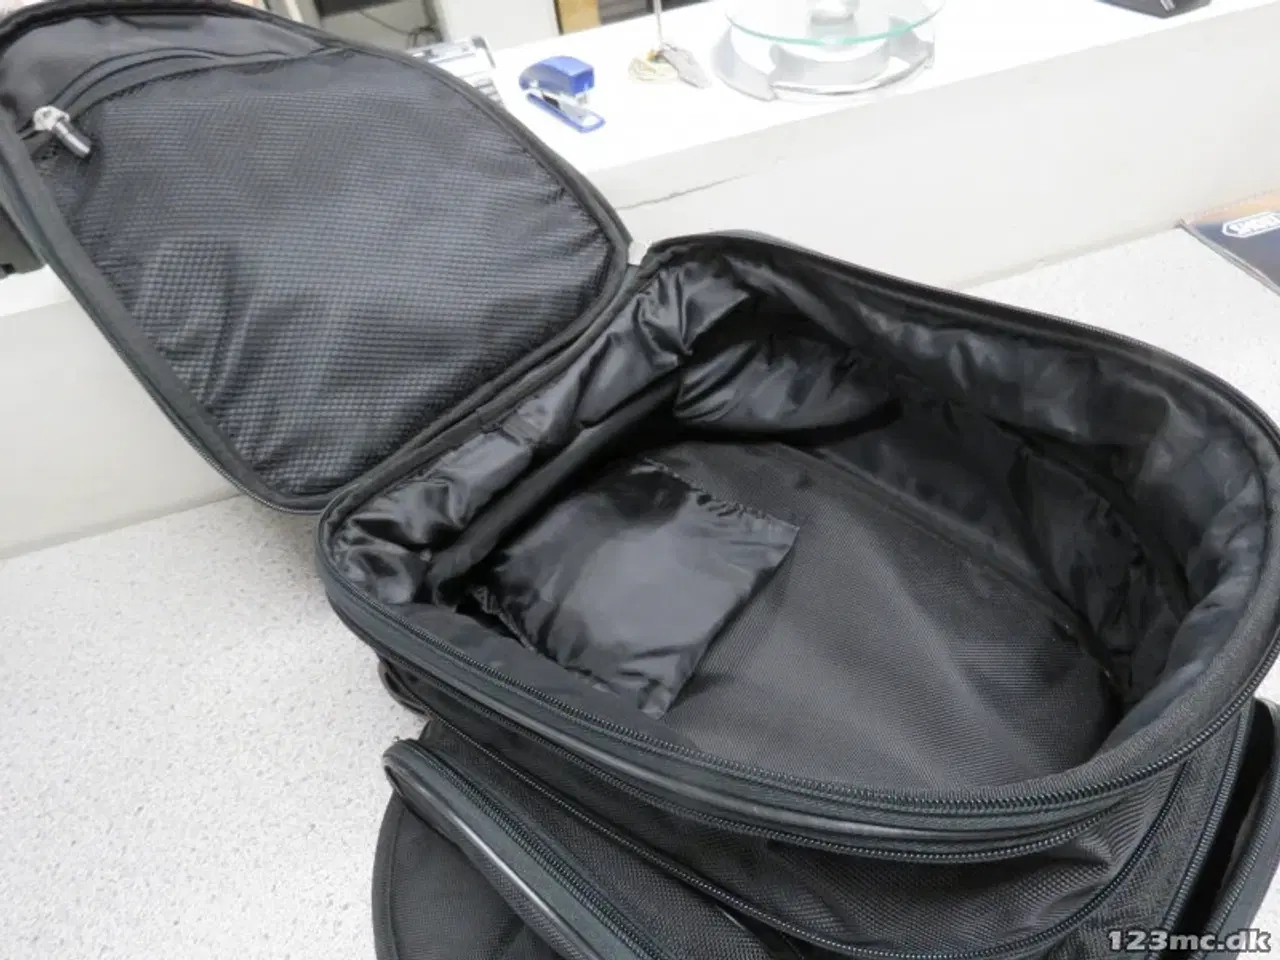 Billede 2 - Tanktaske med mange lommer, magneter og regnslag.